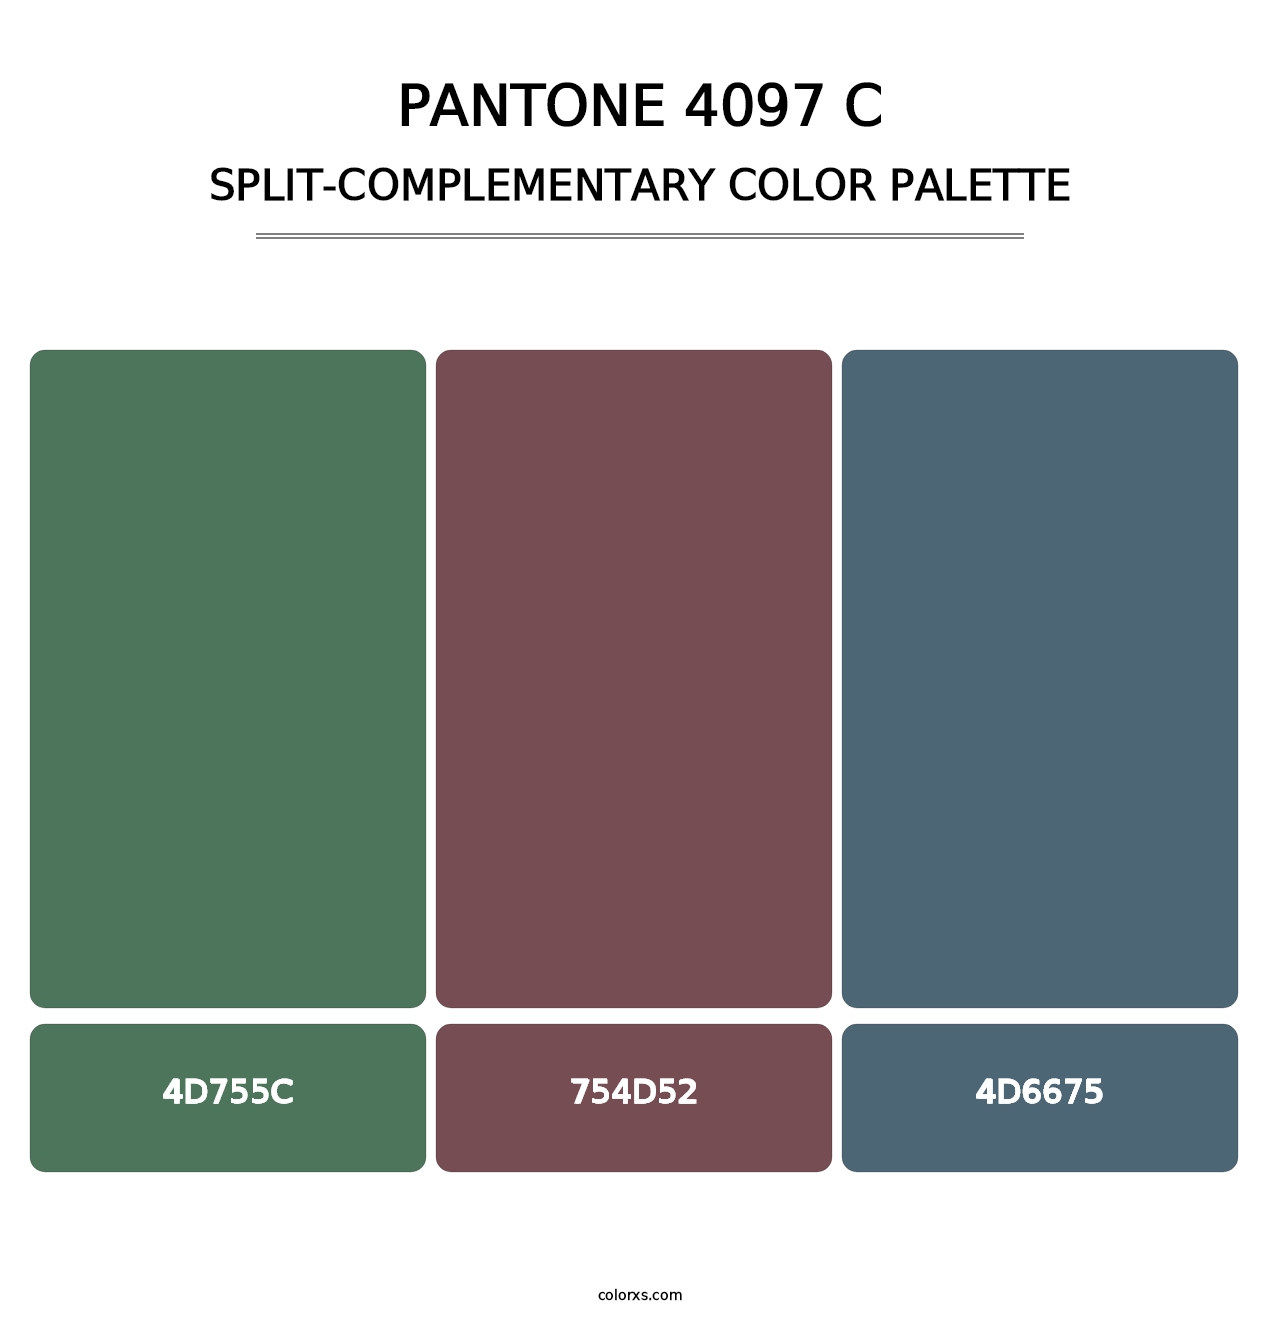 PANTONE 4097 C - Split-Complementary Color Palette